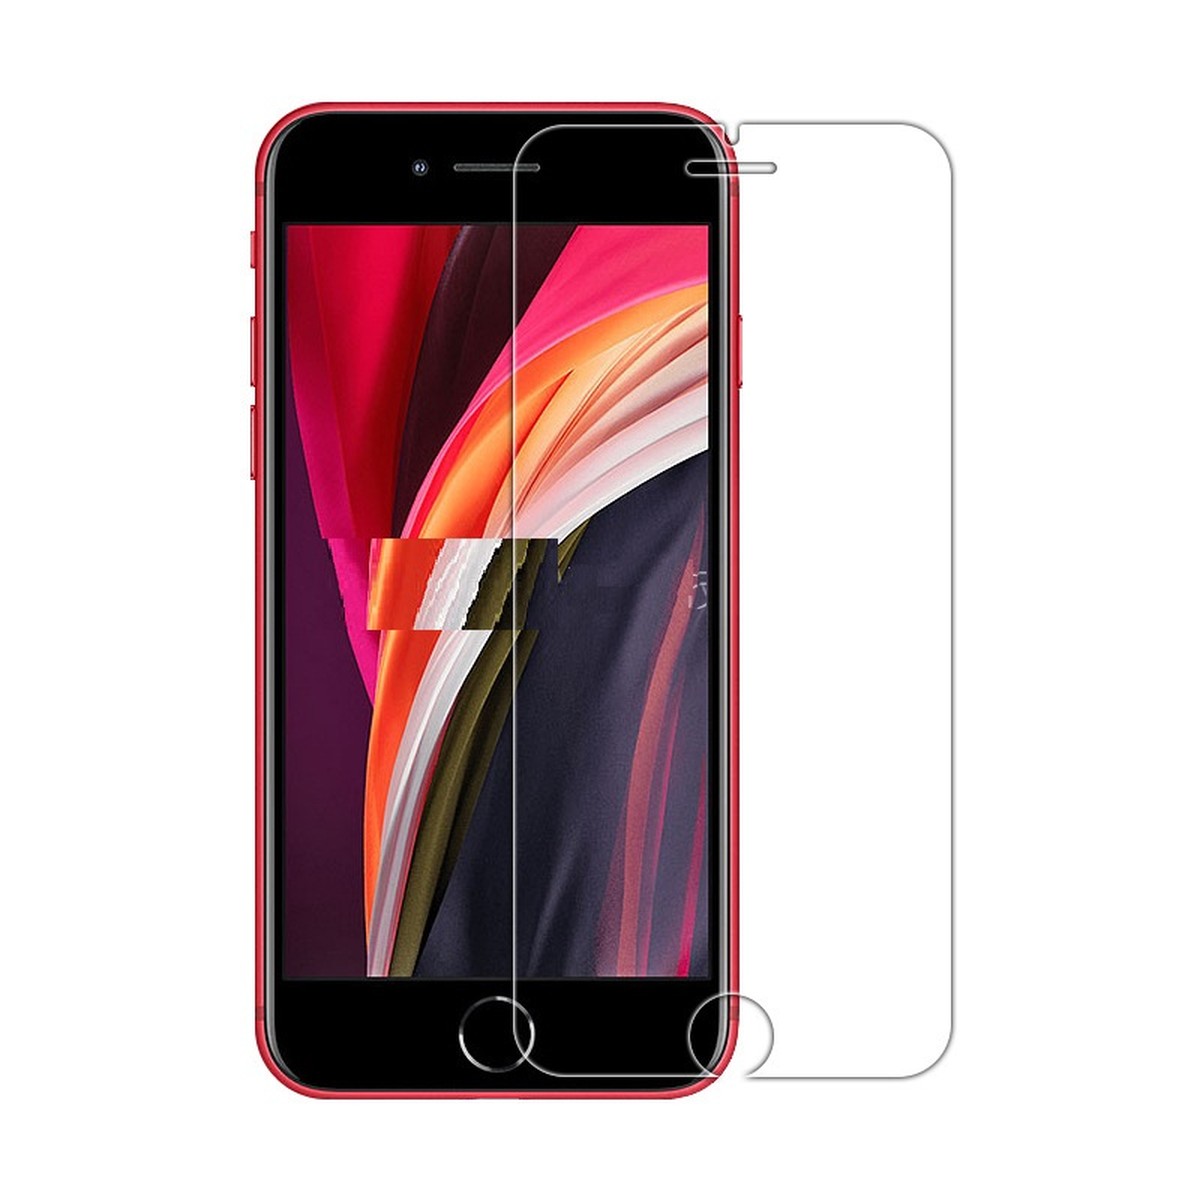 メール便送料無料 iPhone SE2 2020 第2世代 iPhone7 iPhone8 強化ガラス 最新 4.7インチ 再販ご予約限定送料無料 2.5D 液晶保護フィルム 0.26mm 9H